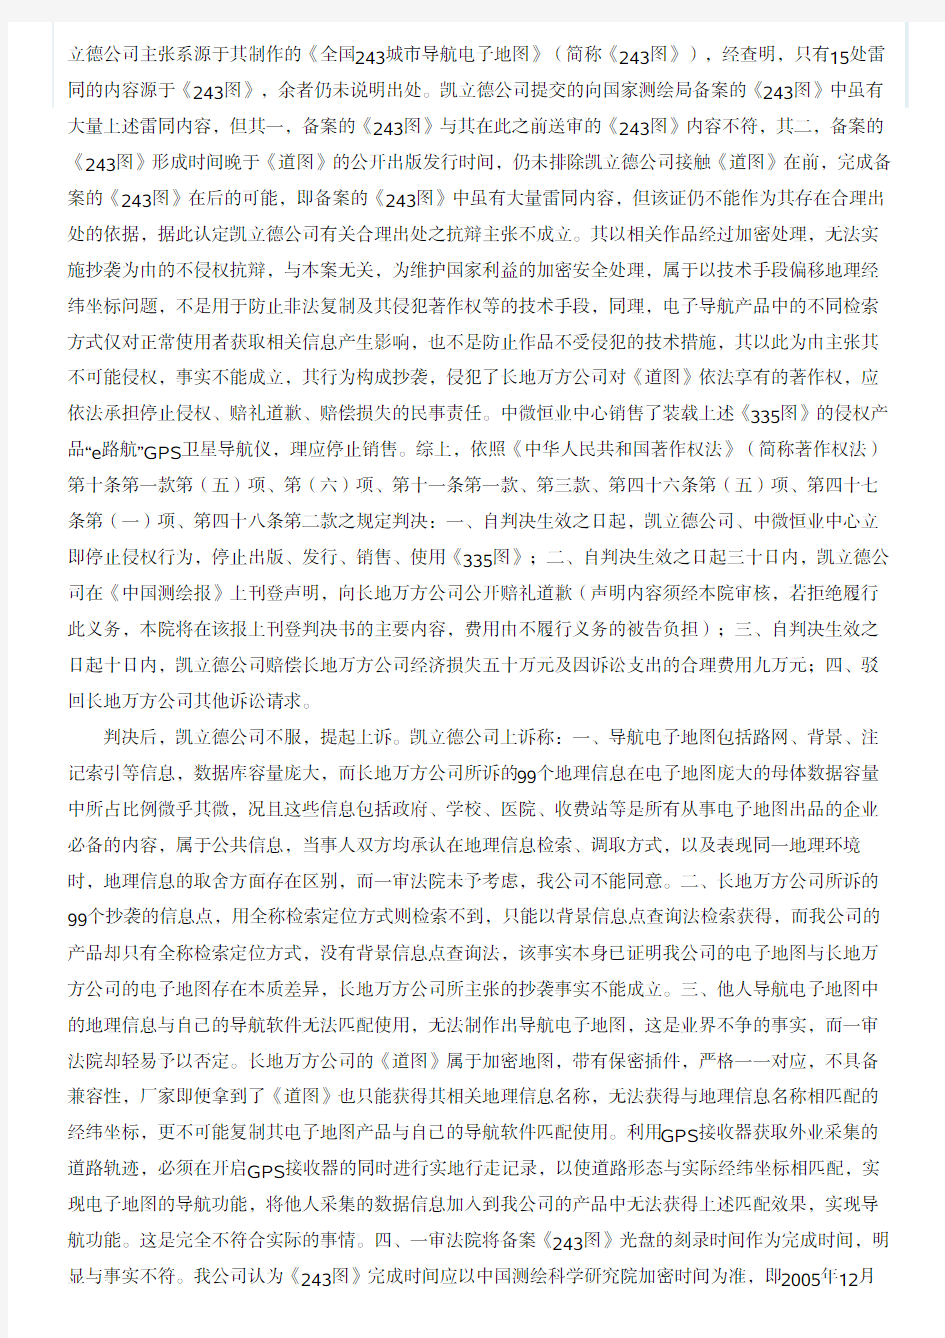 北京第一中级人民法院民事判决书-中国知识产权裁判文书网